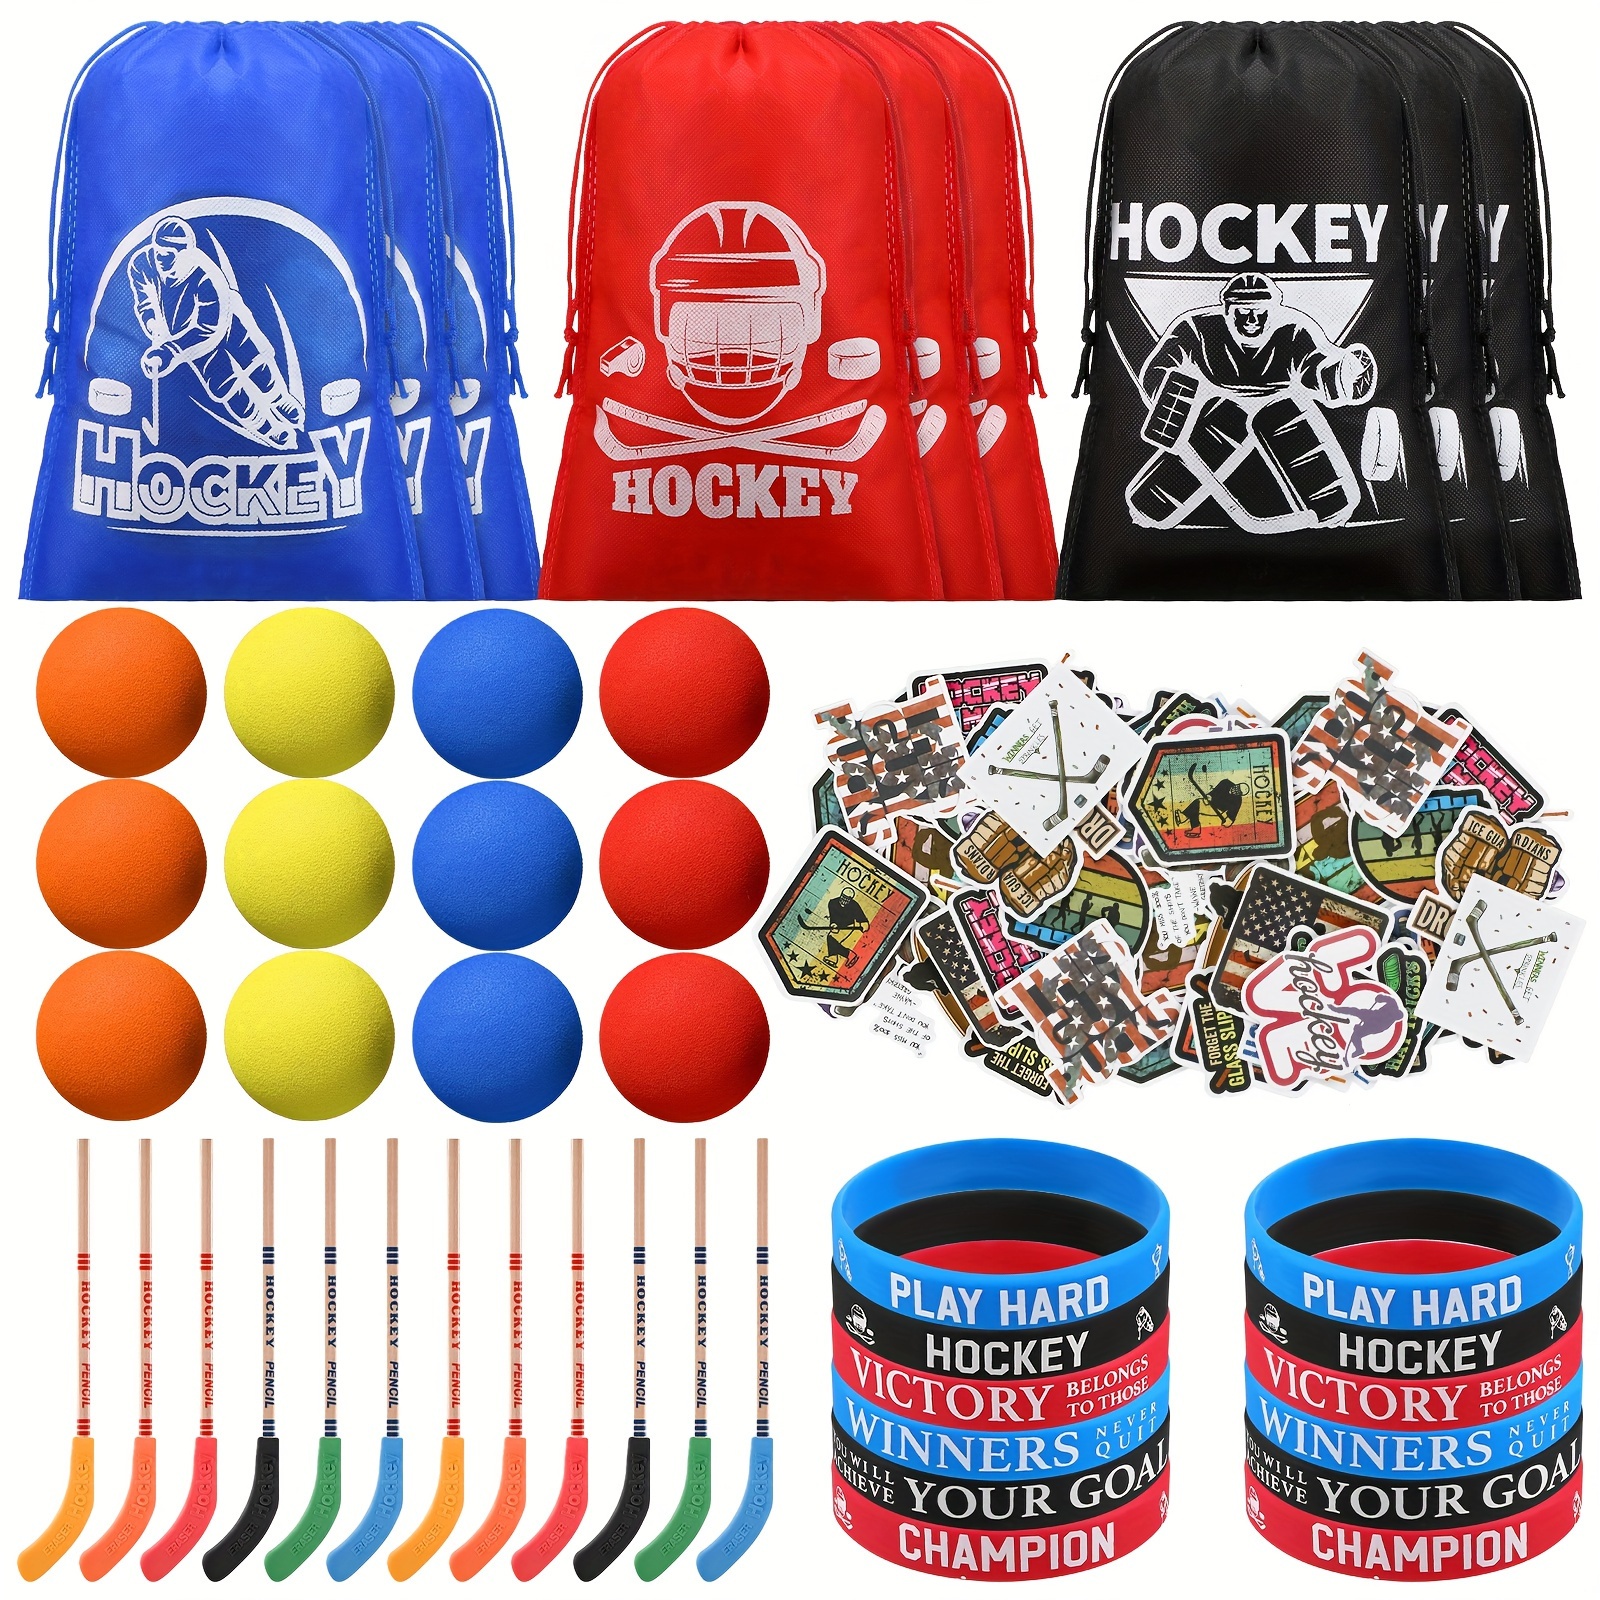 

98 Pcs Hockey Party Favors Include Hockey Pencils, Mini Foam Knee Hockey Balls Hockey Stickers Silicone Hockey Bracelets Drawstring Hockey Gift Bag For Sport Hockey Birthday Party